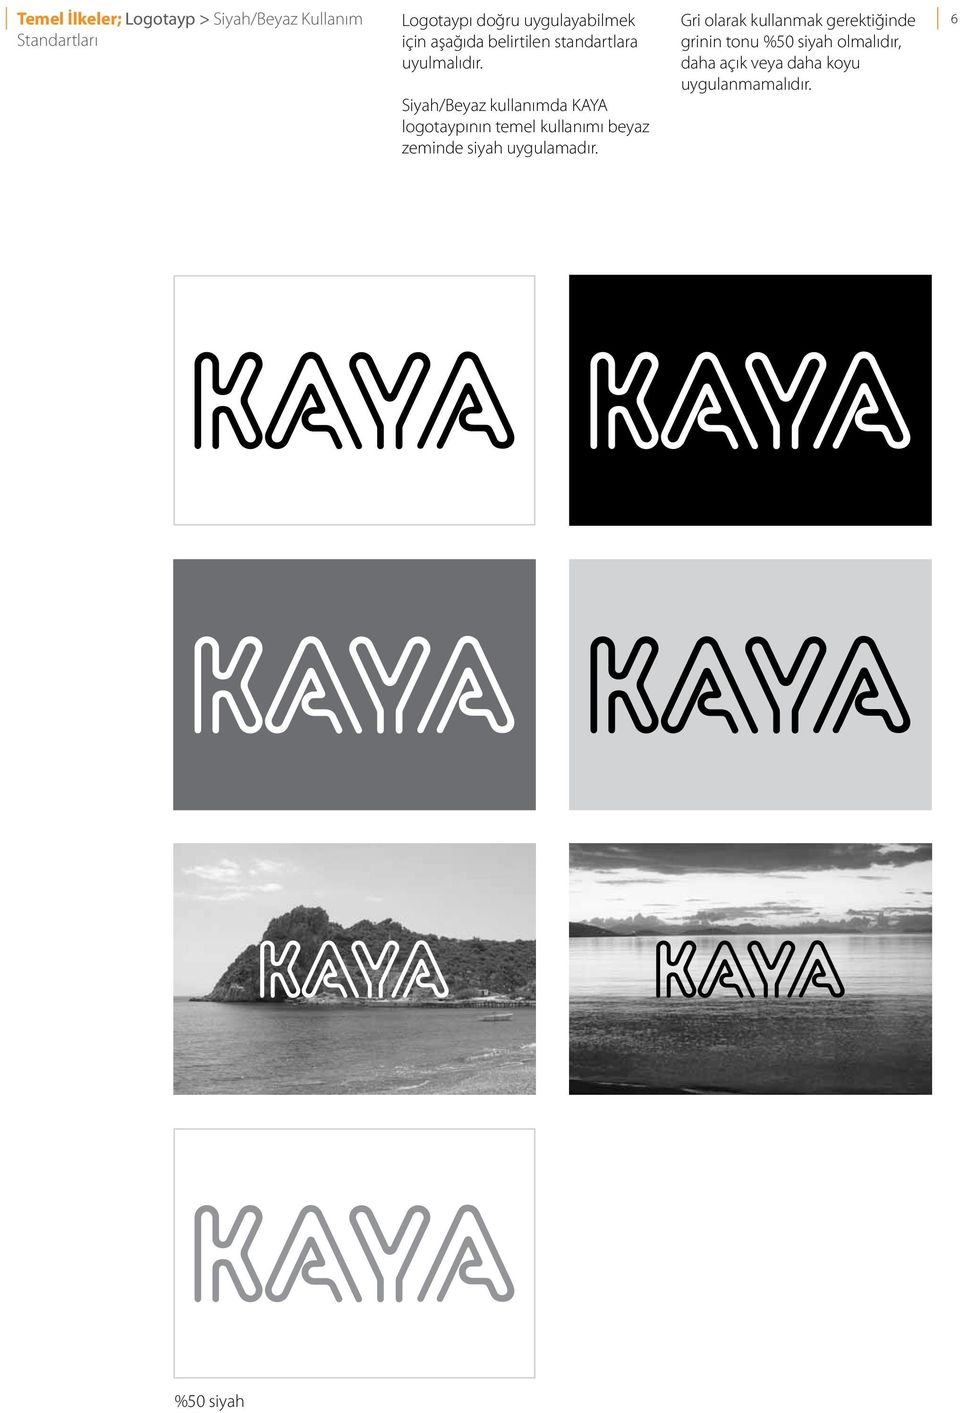 Siyah/Beyaz kullanımda KAYA logotaypının temel kullanımı beyaz zeminde siyah